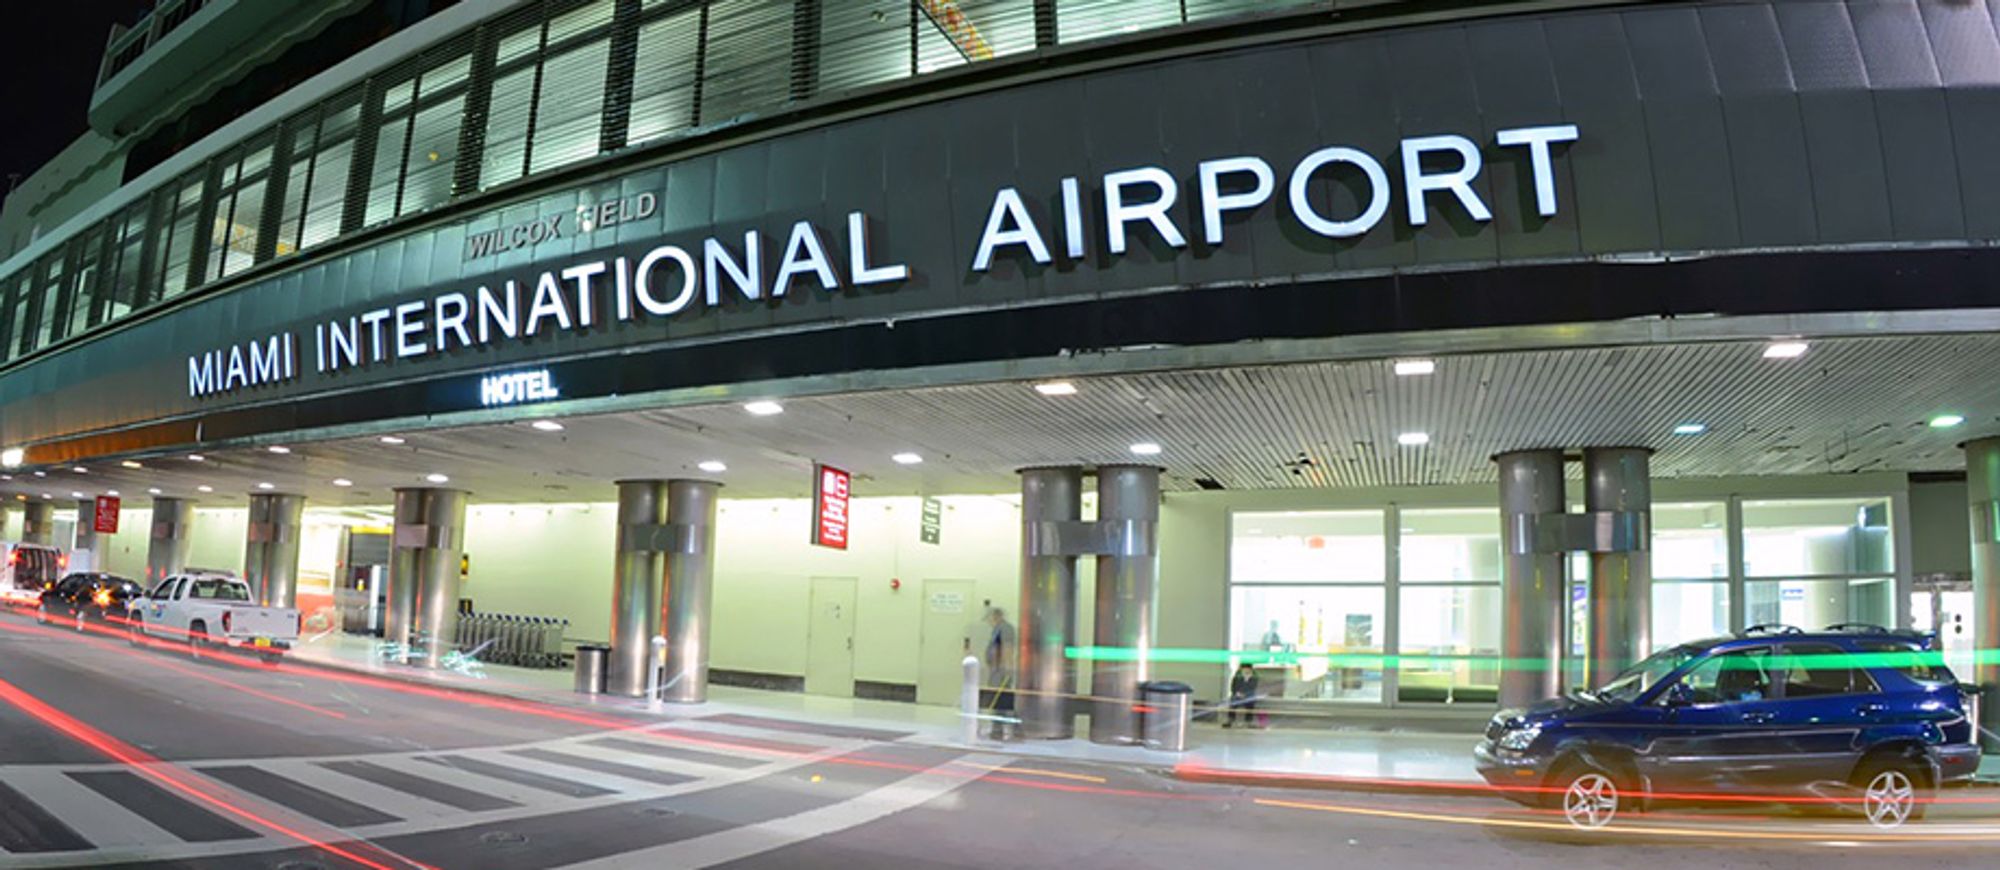 Miami International Airport (MIA) (ميامي) (Arabic)